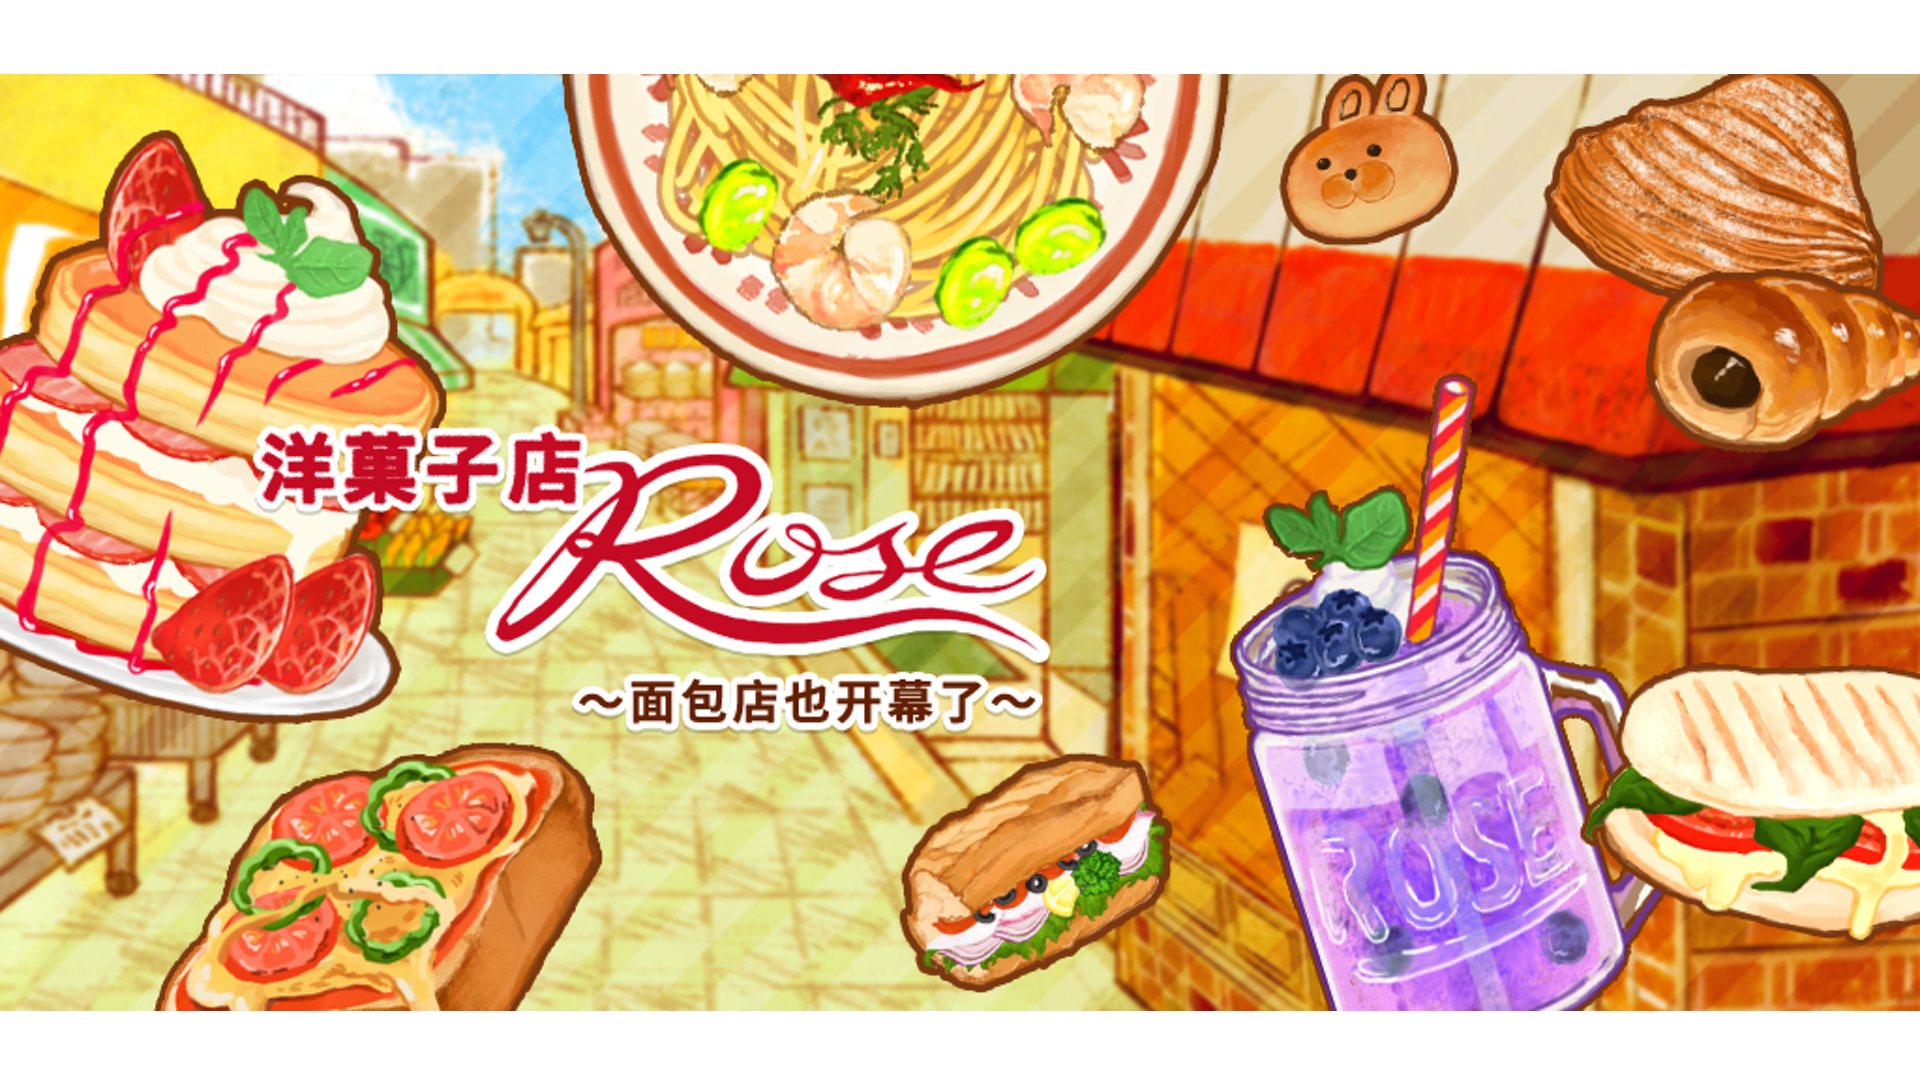 洋果子店rose食譜攻略 No.411-420